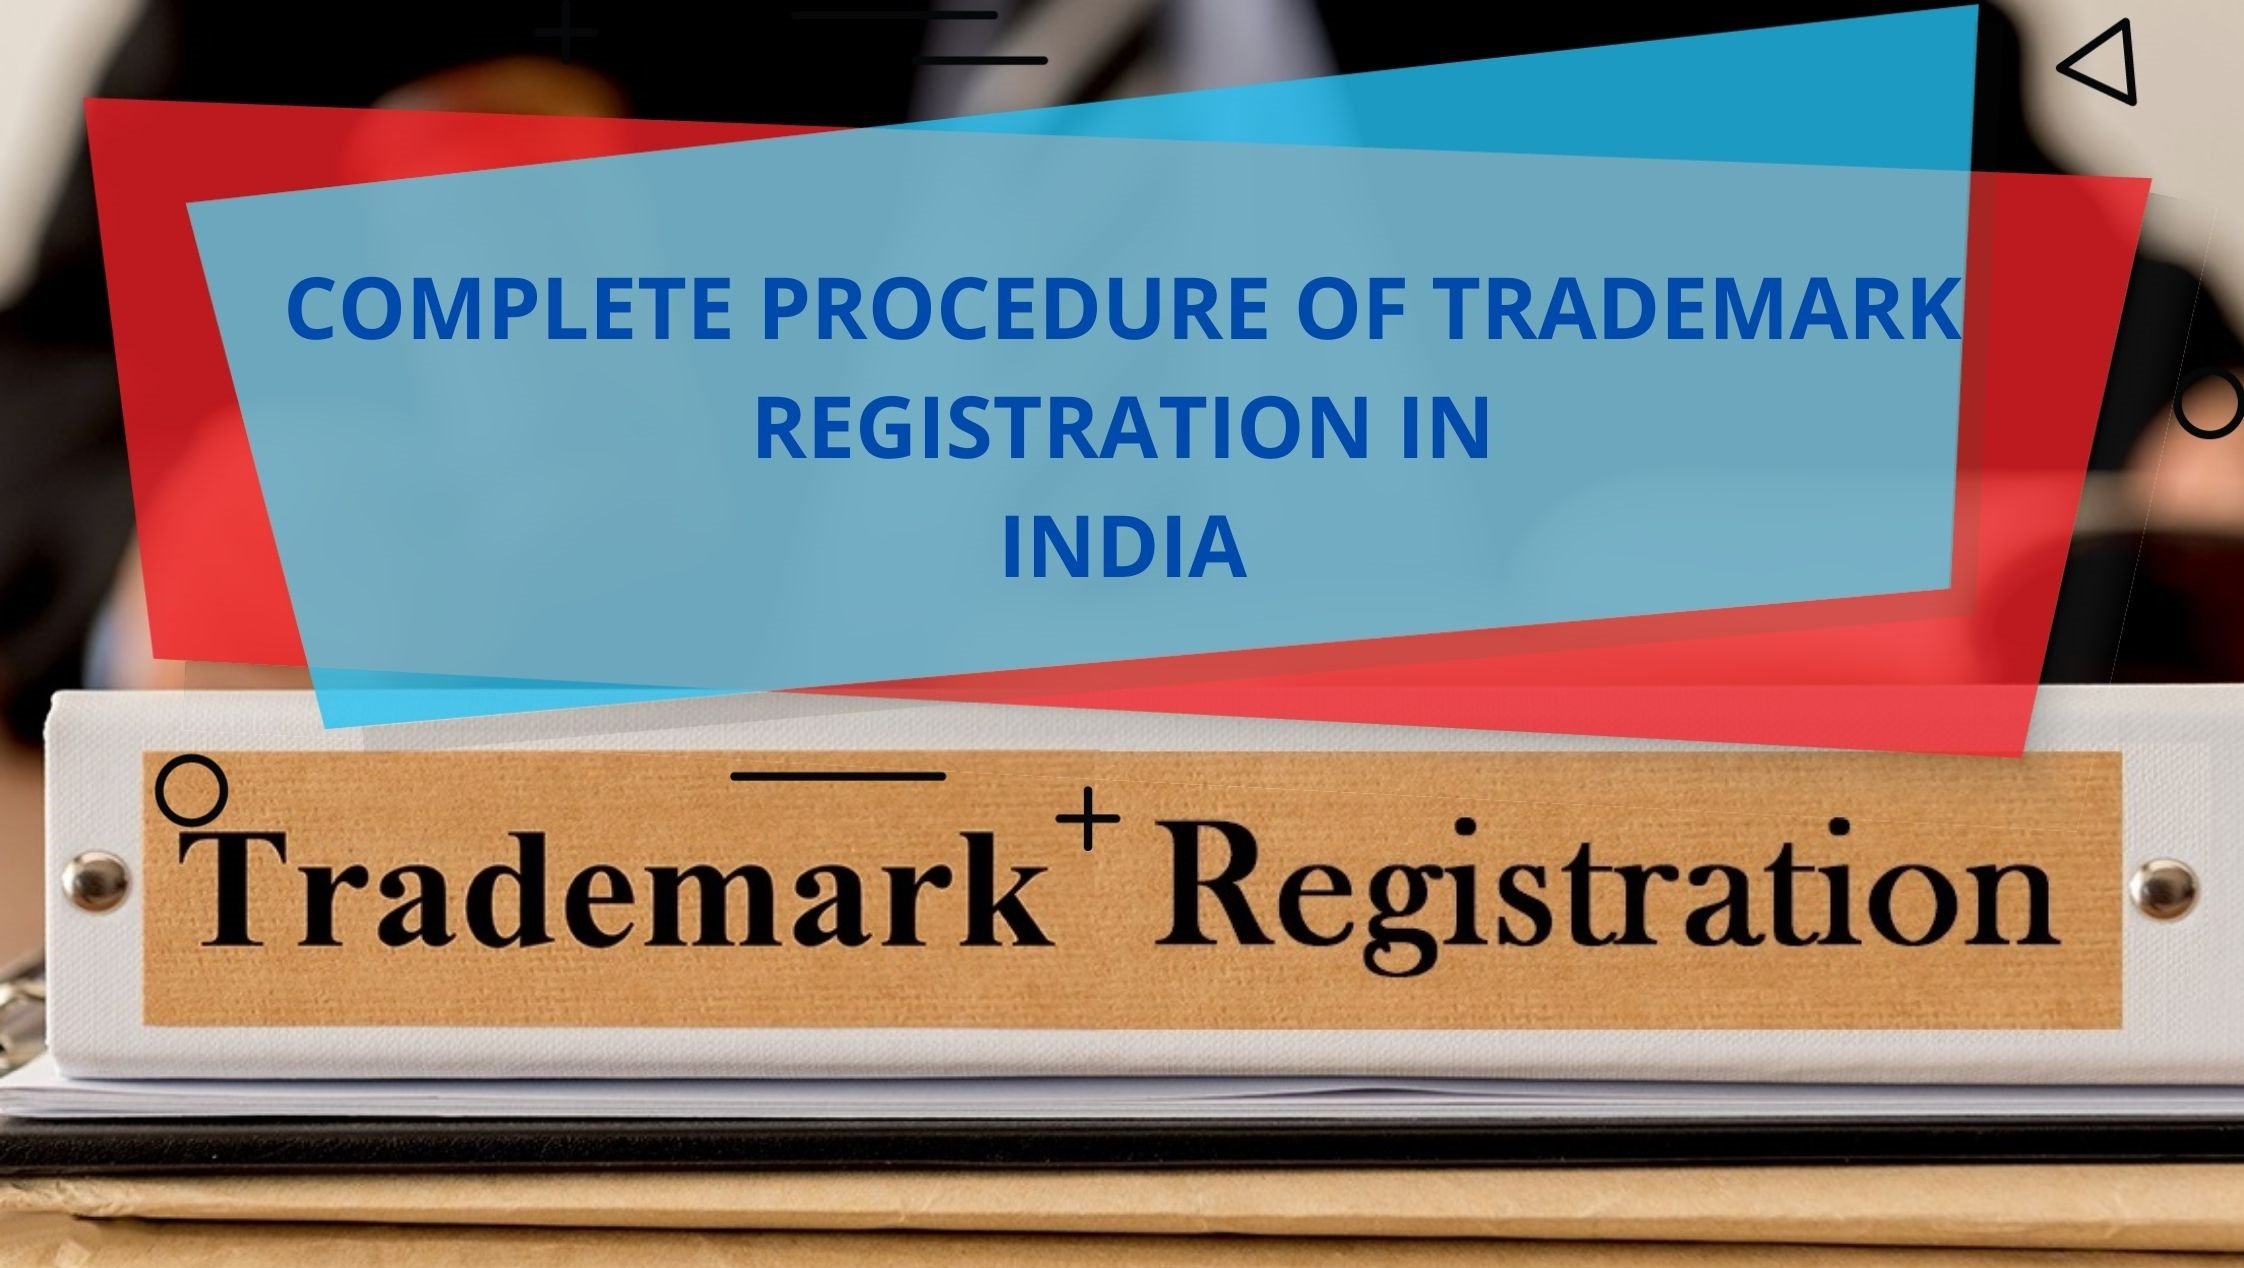 COMPLETE PROCEDURE OF TRADEMARK REGISTRATION IN INDIA